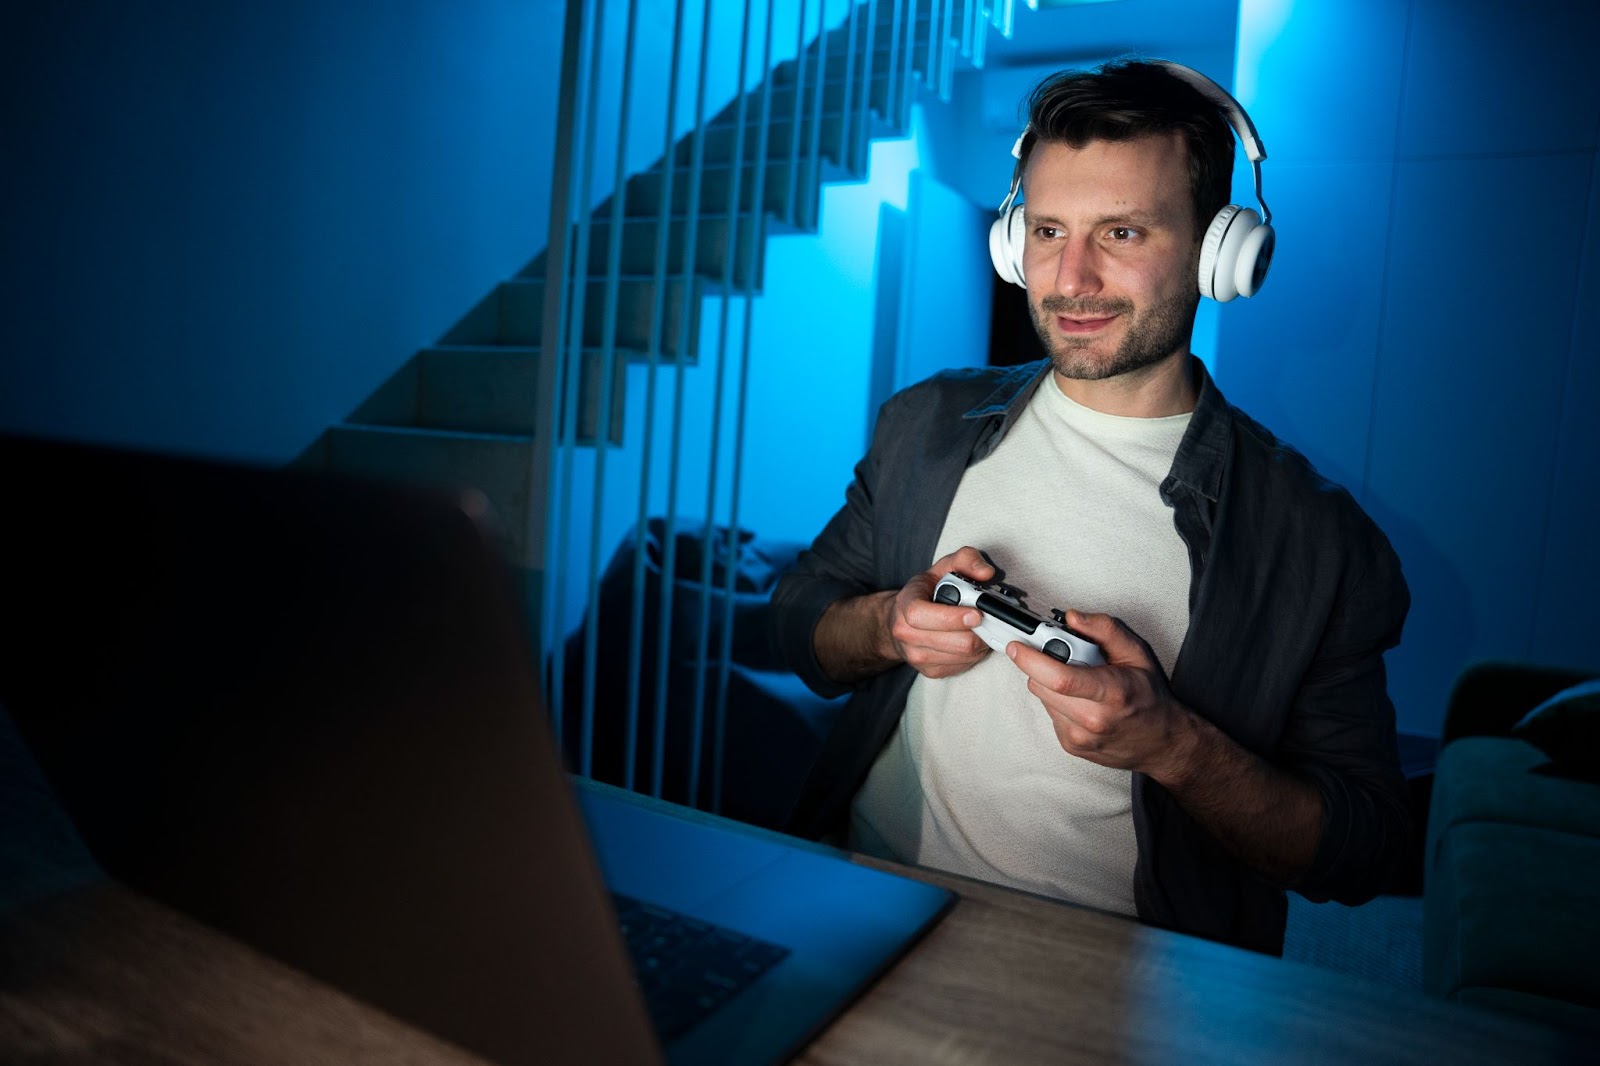 Man enjoying playing video game